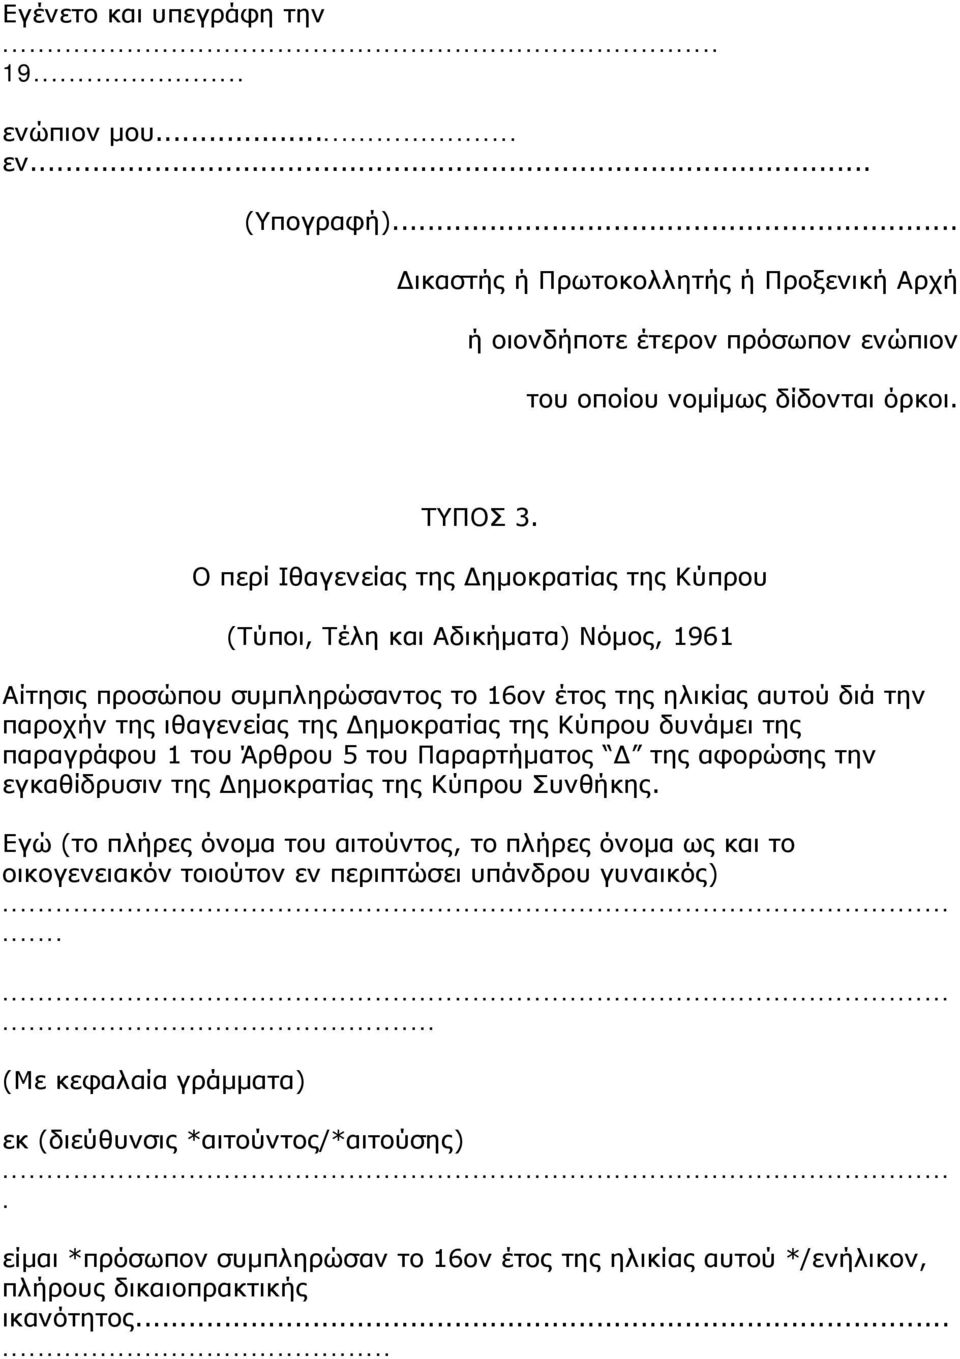 Κύπρου δυνάμει της παραγράφου 1 του Άρθρου 5 του Παραρτήματος Δ της αφορώσης την εγκαθίδρυσιν της Δημοκρατίας της Κύπρου Συνθήκης.